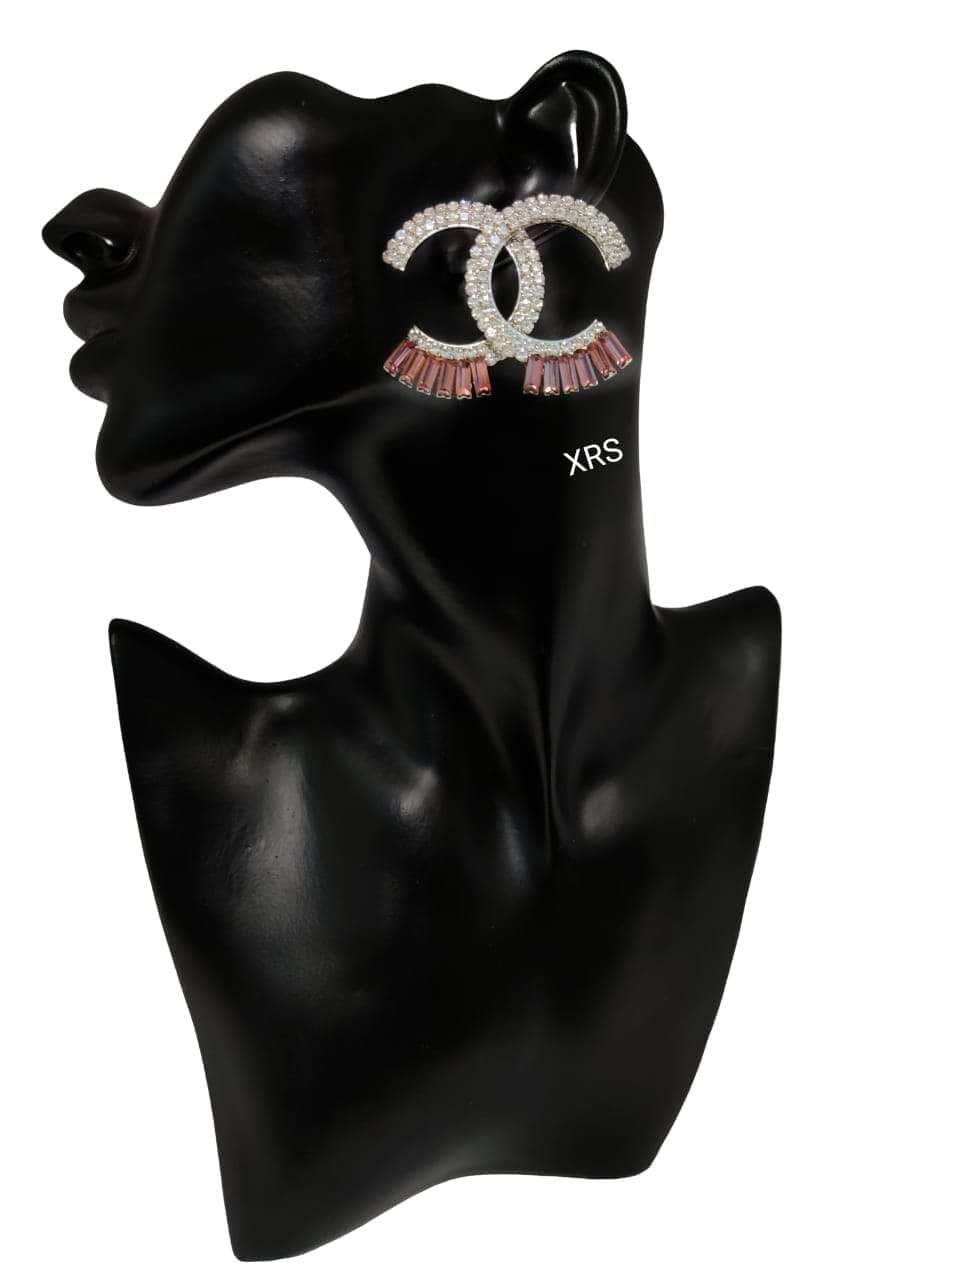 Zevar Earrings BROWN Chanel Studs In Premium Zircon Stones By Zevar